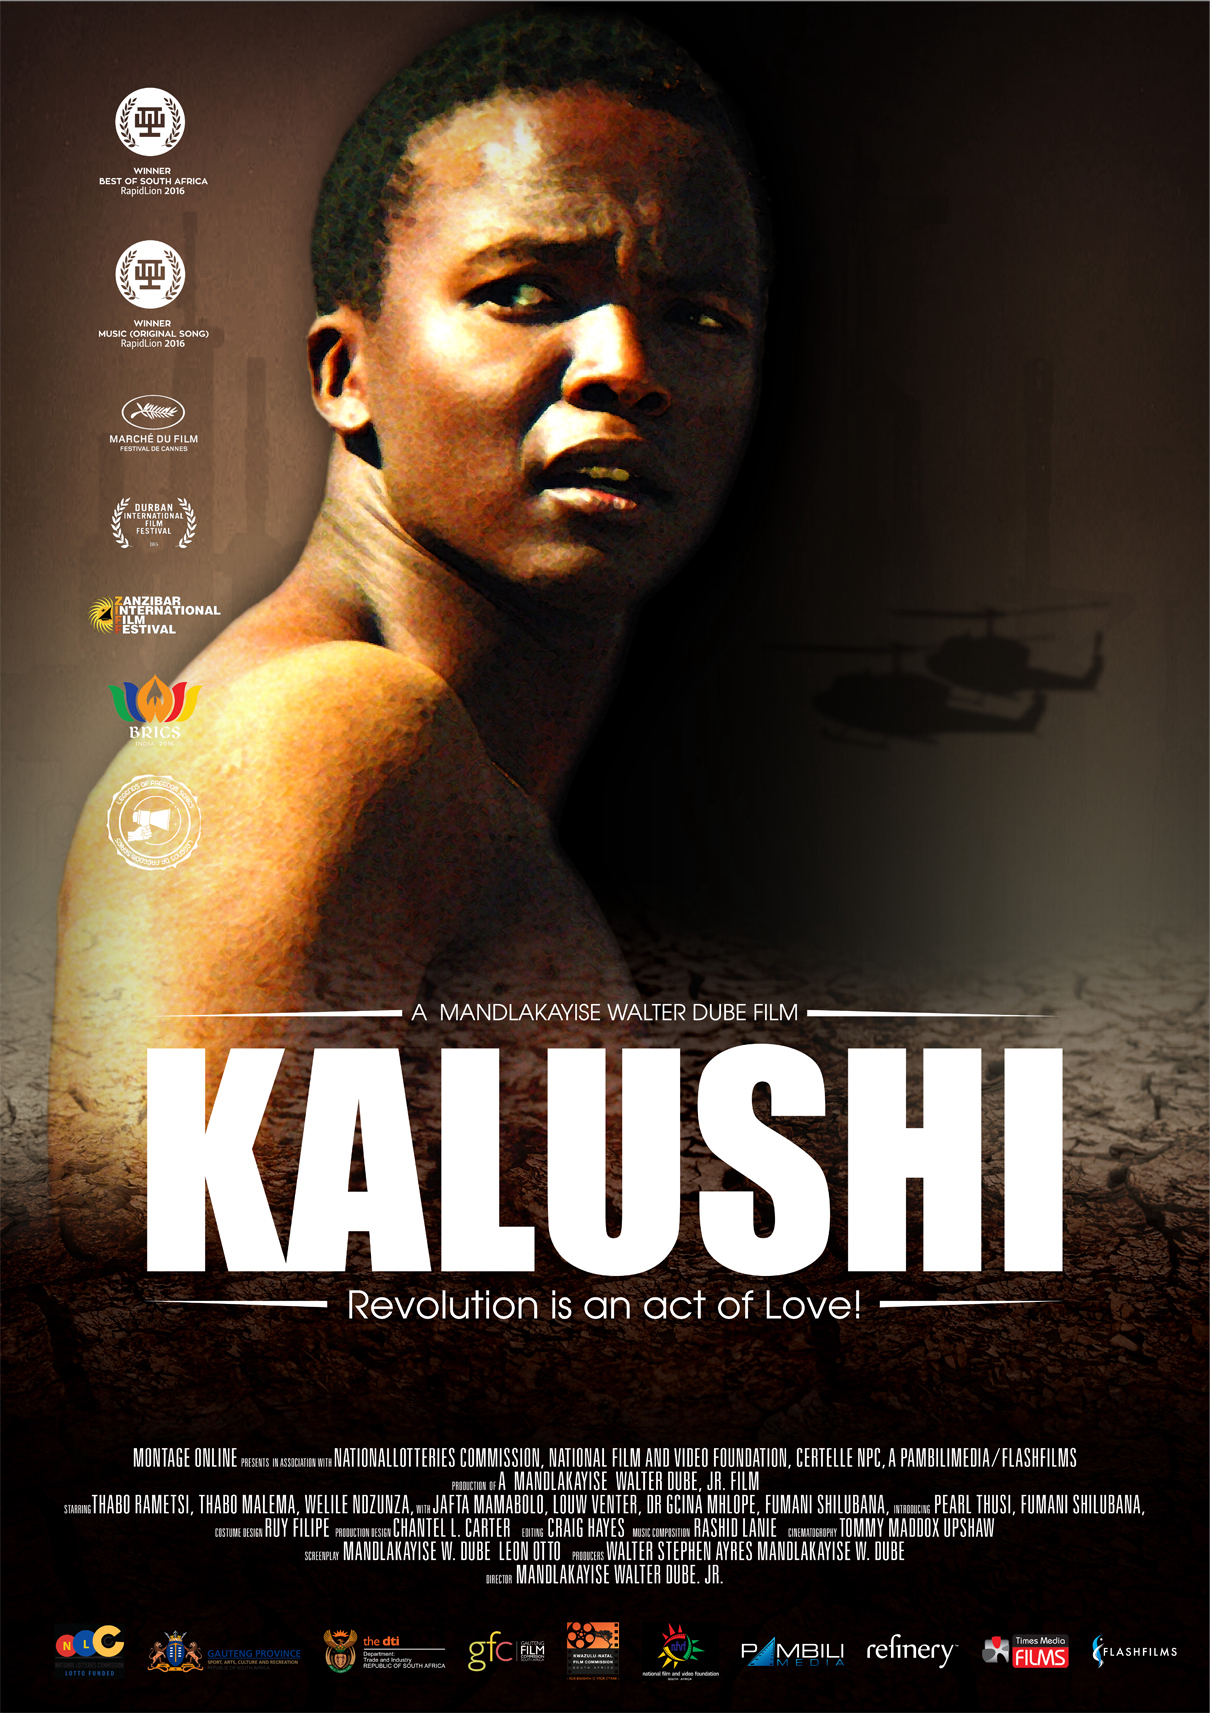 Kalushi: Câu chuyện về Solomon Mahlangu - Kalushi: The Story of Solomon Mahlangu